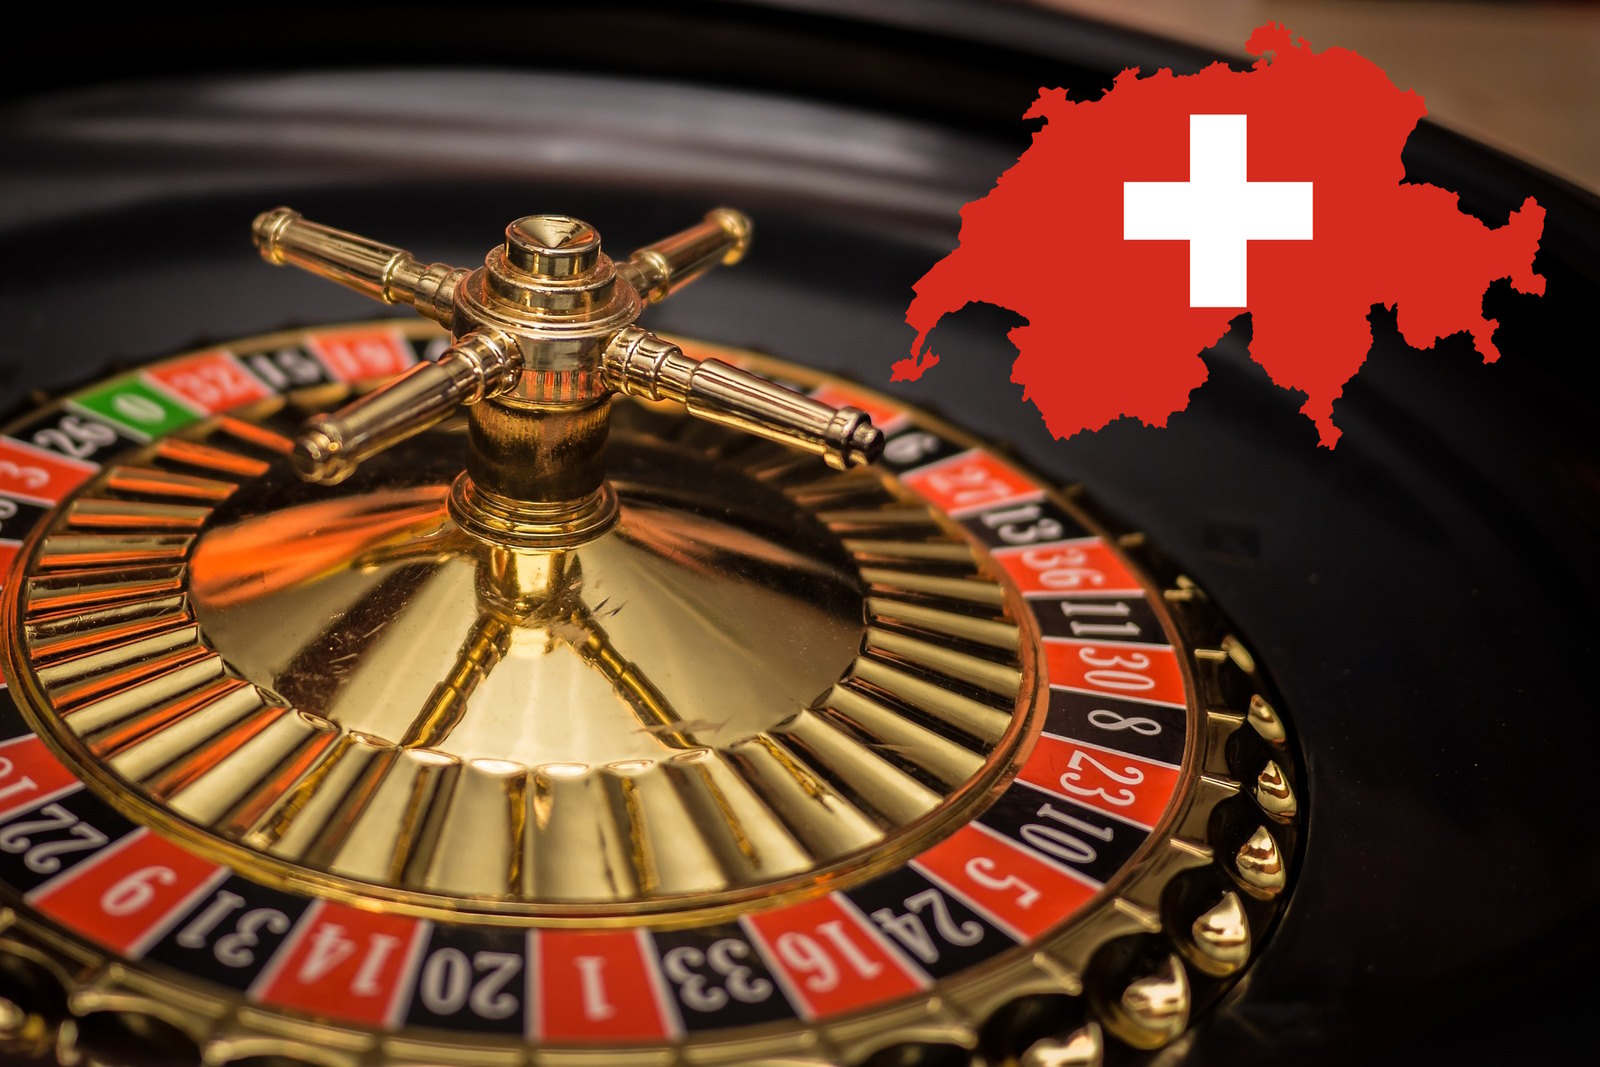 So verlieren Sie Geld mit Online Casino Österreich